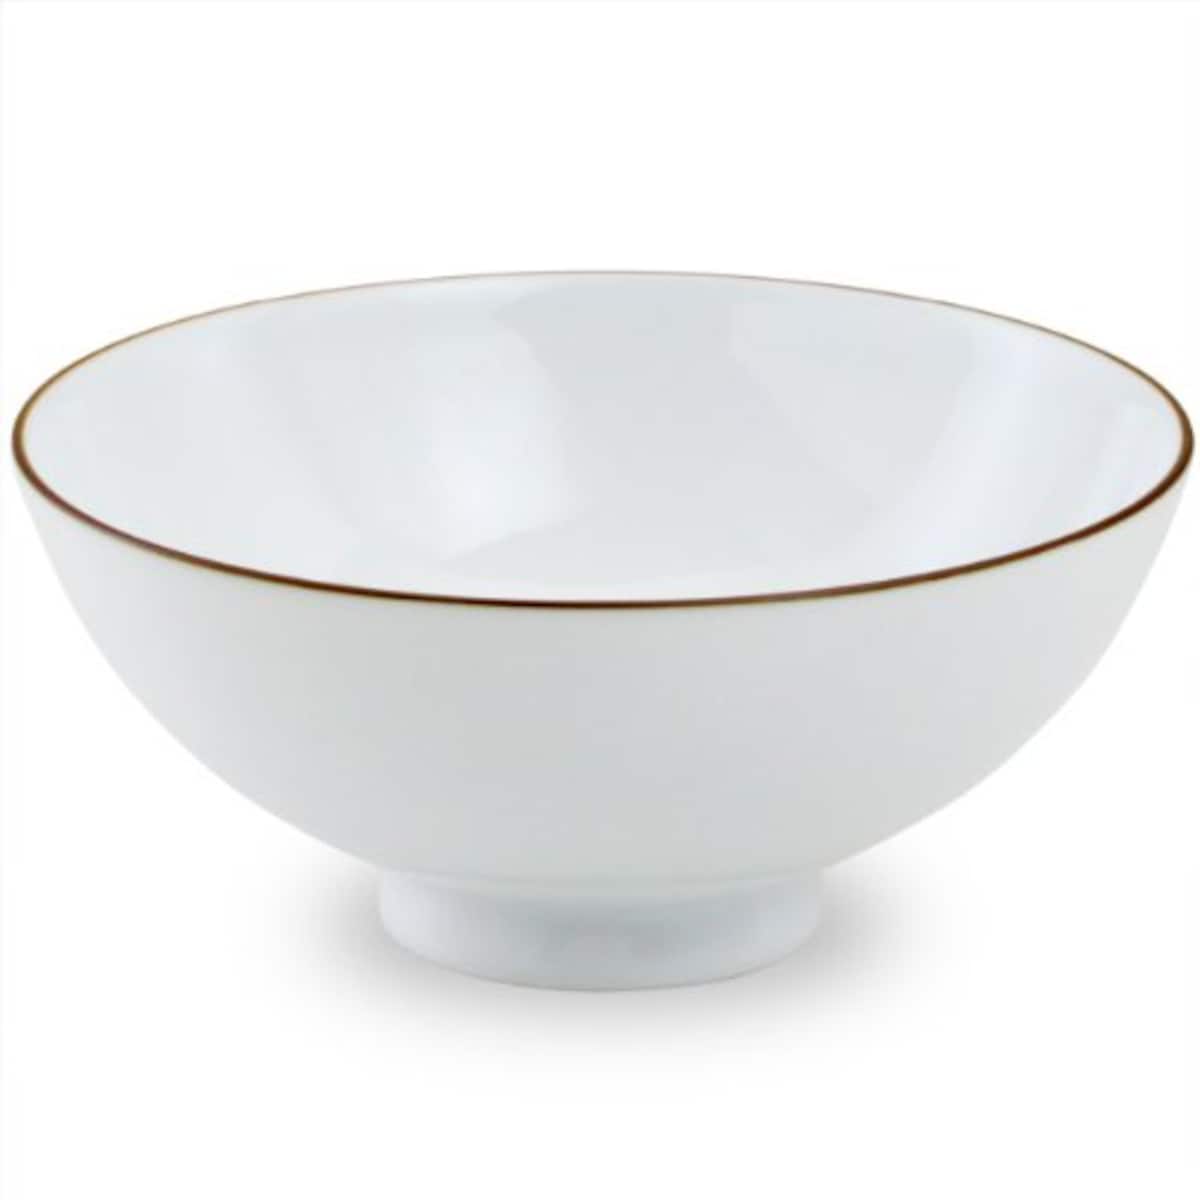 白山陶器 ベーシック 4寸飯碗 白マット(12cm茶碗)